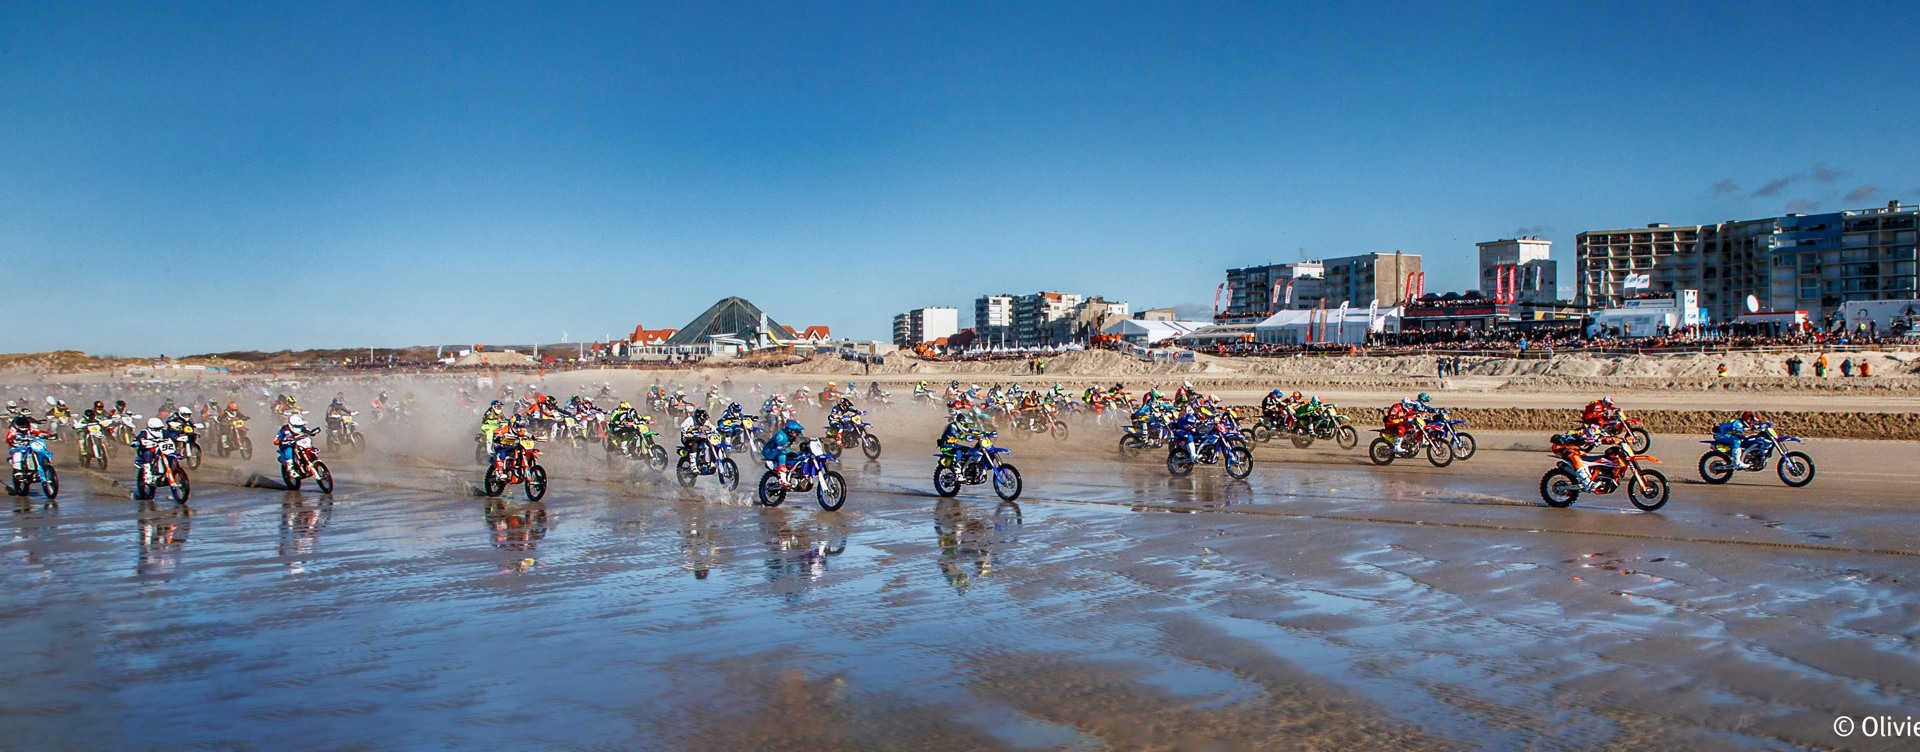 Erleben Sie das Motorradspektakel Enduropale Le Touquet
am Strand von Le Touquet-Paris Plage